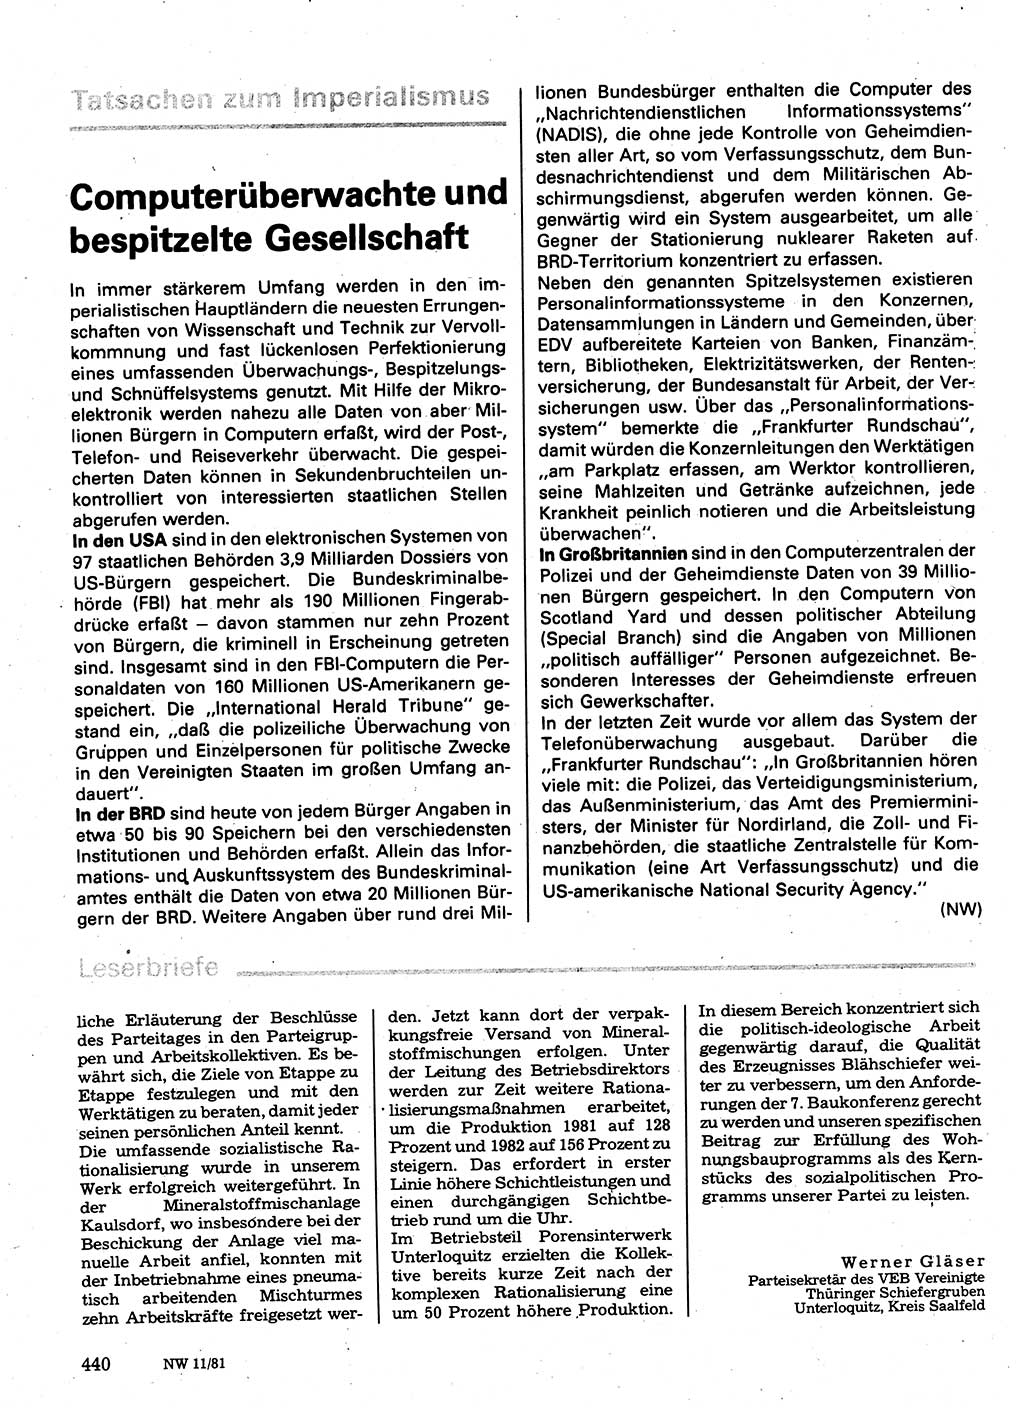 Neuer Weg (NW), Organ des Zentralkomitees (ZK) der SED (Sozialistische Einheitspartei Deutschlands) für Fragen des Parteilebens, 36. Jahrgang [Deutsche Demokratische Republik (DDR)] 1981, Seite 440 (NW ZK SED DDR 1981, S. 440)